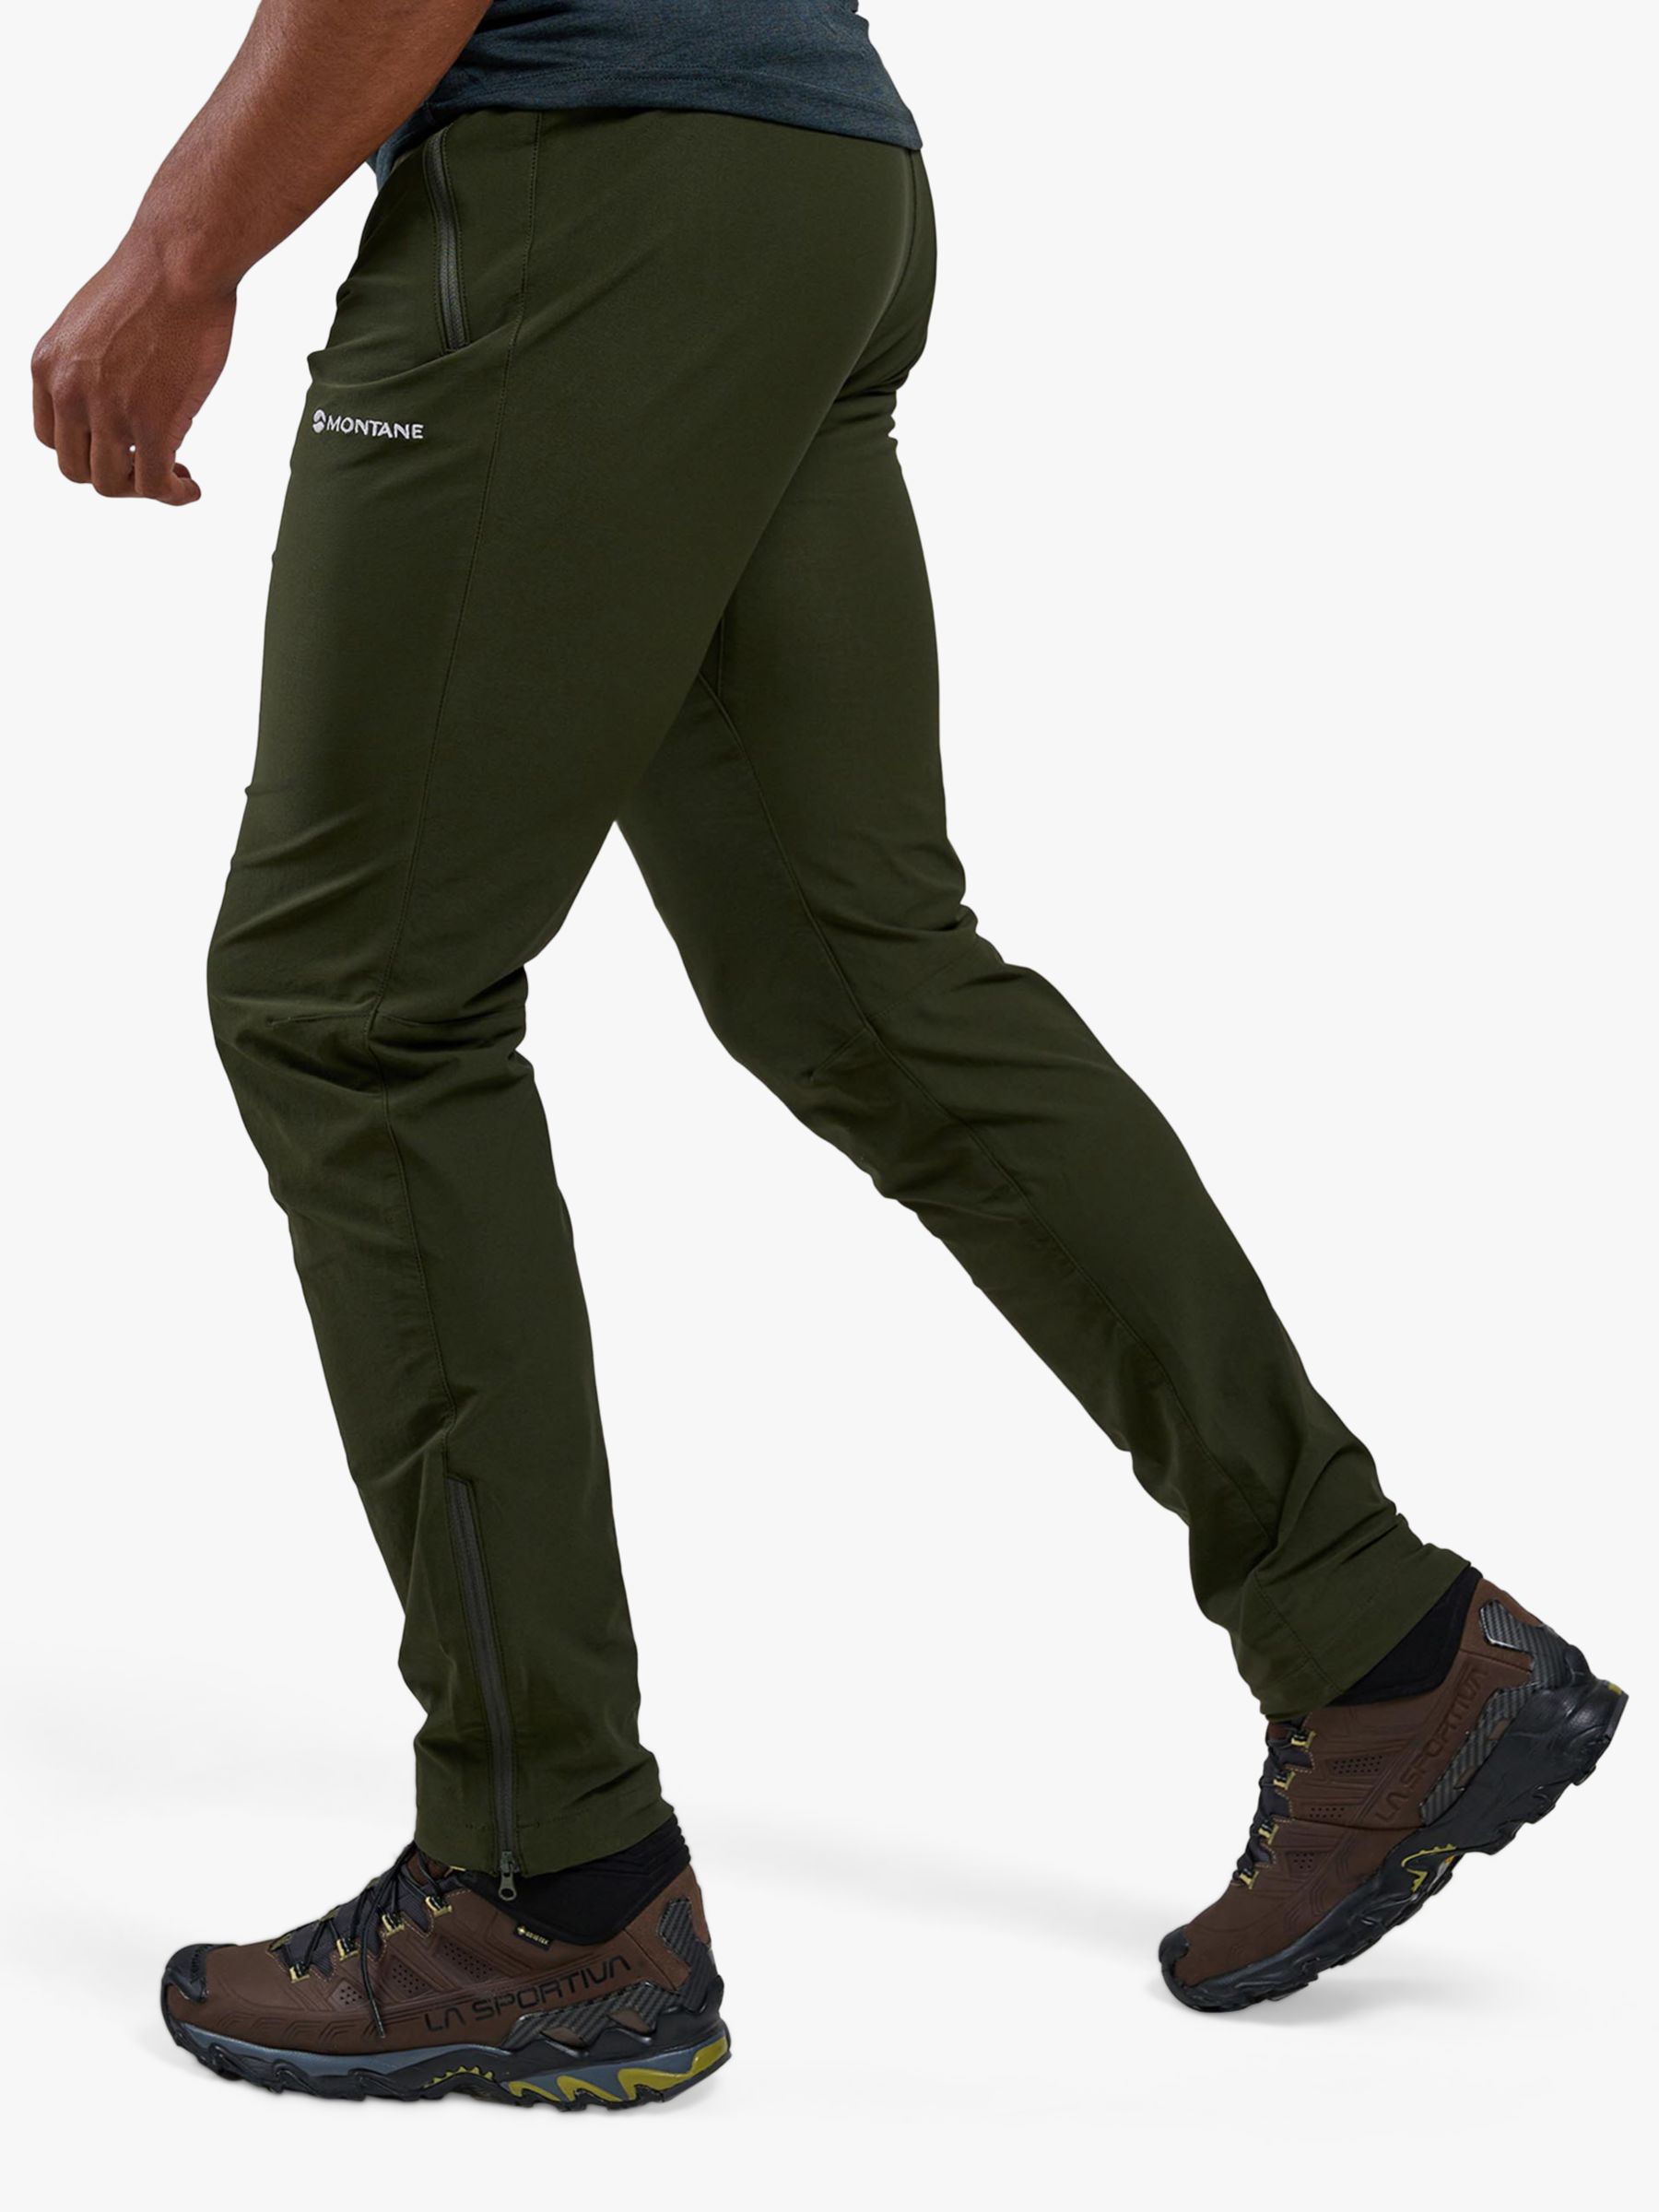 All Men's Sportswear Brands - Trousers, Walking, Hiking & Camping